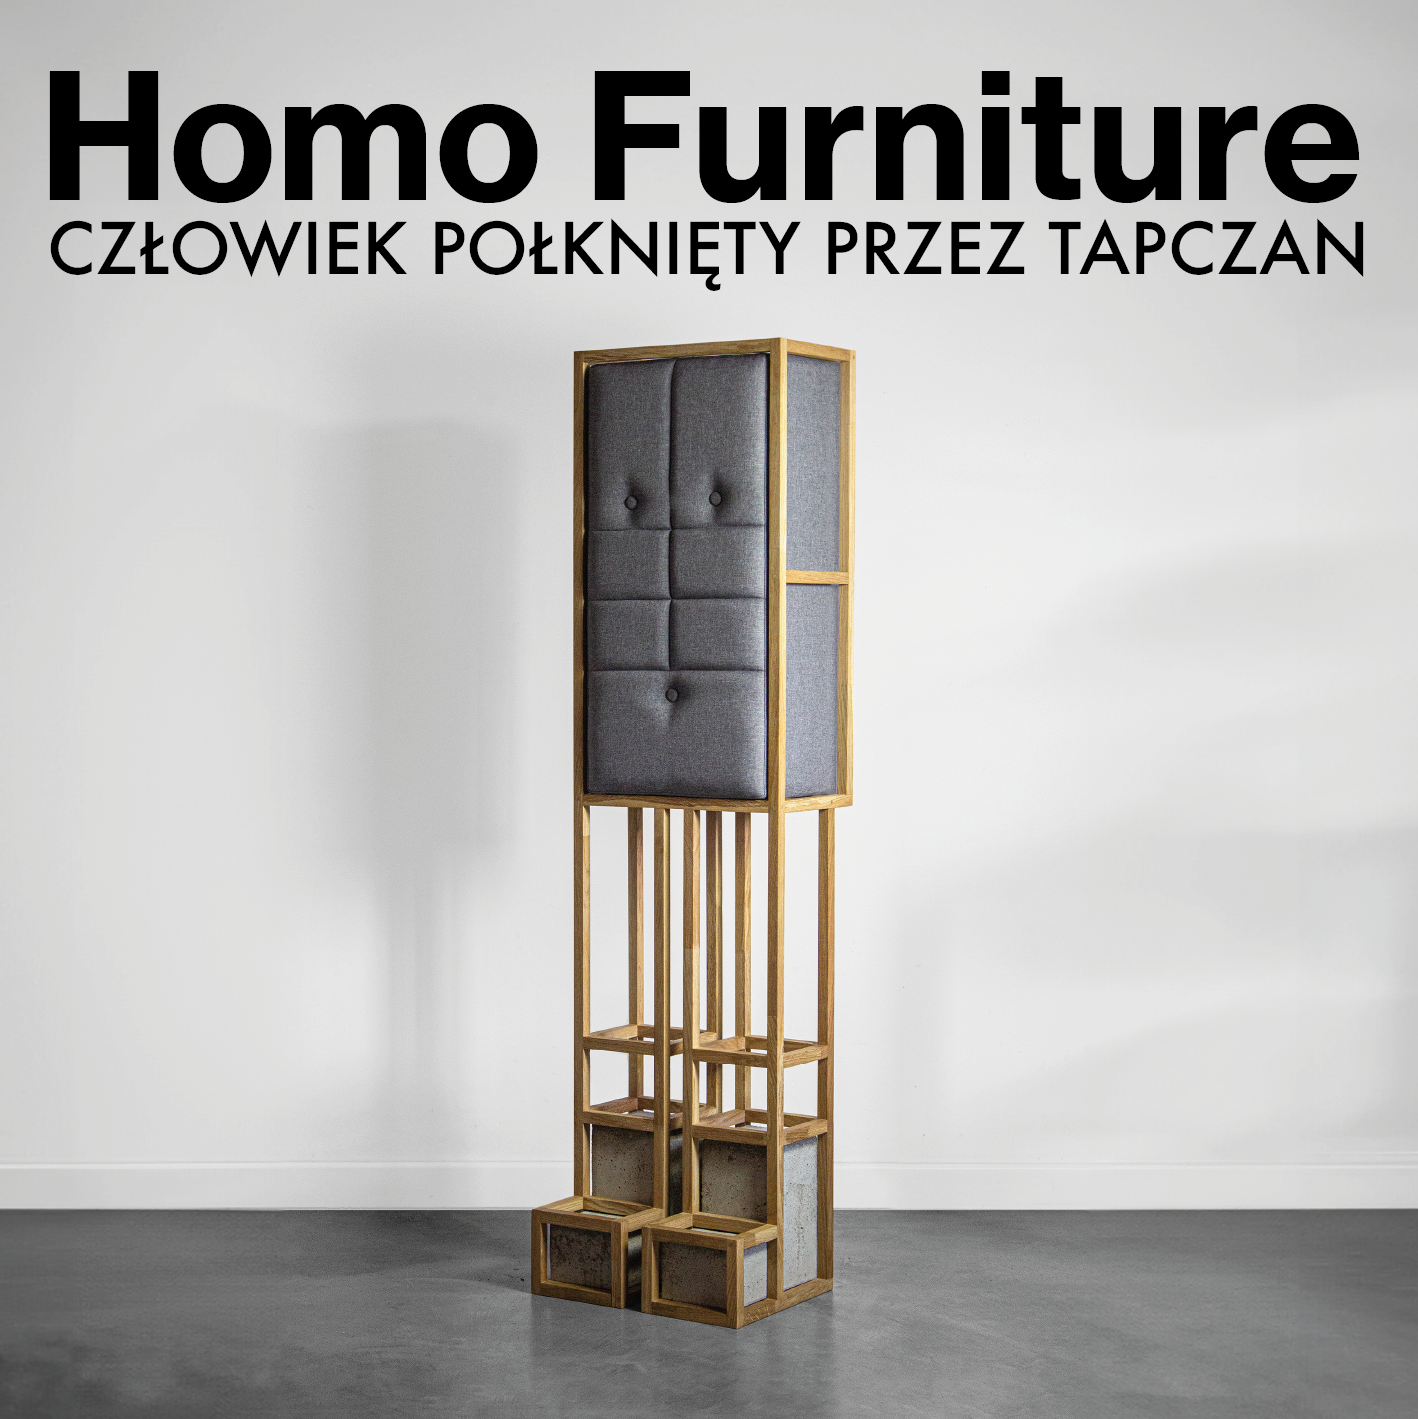 Homo Furniture. Człowiek połknięty przez tapczan – wystawa czasowa Bartosza Muchy do 19 maja